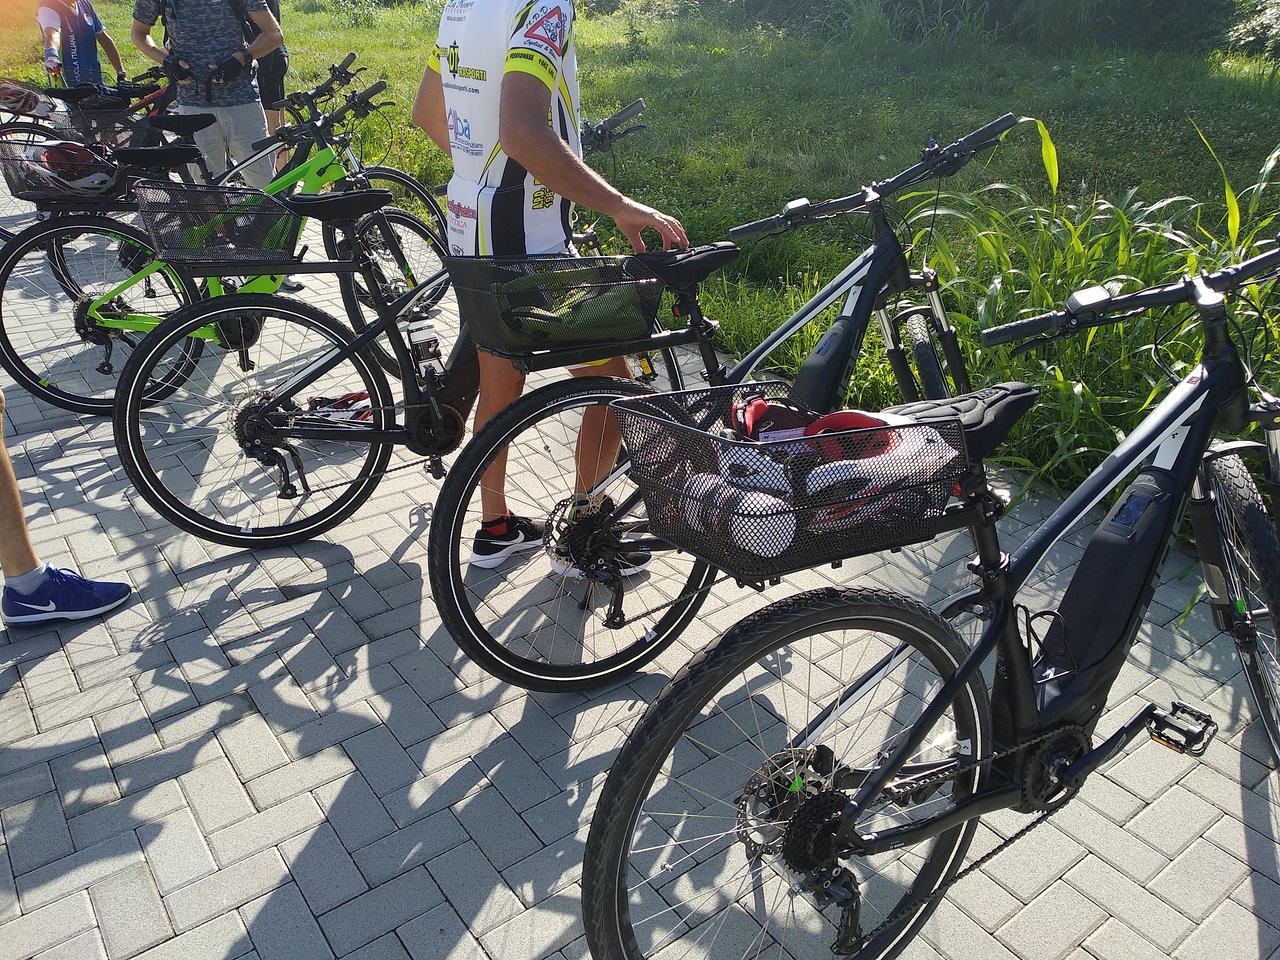 CicloTurismo E-bike - Gite tra le colline Torinesi